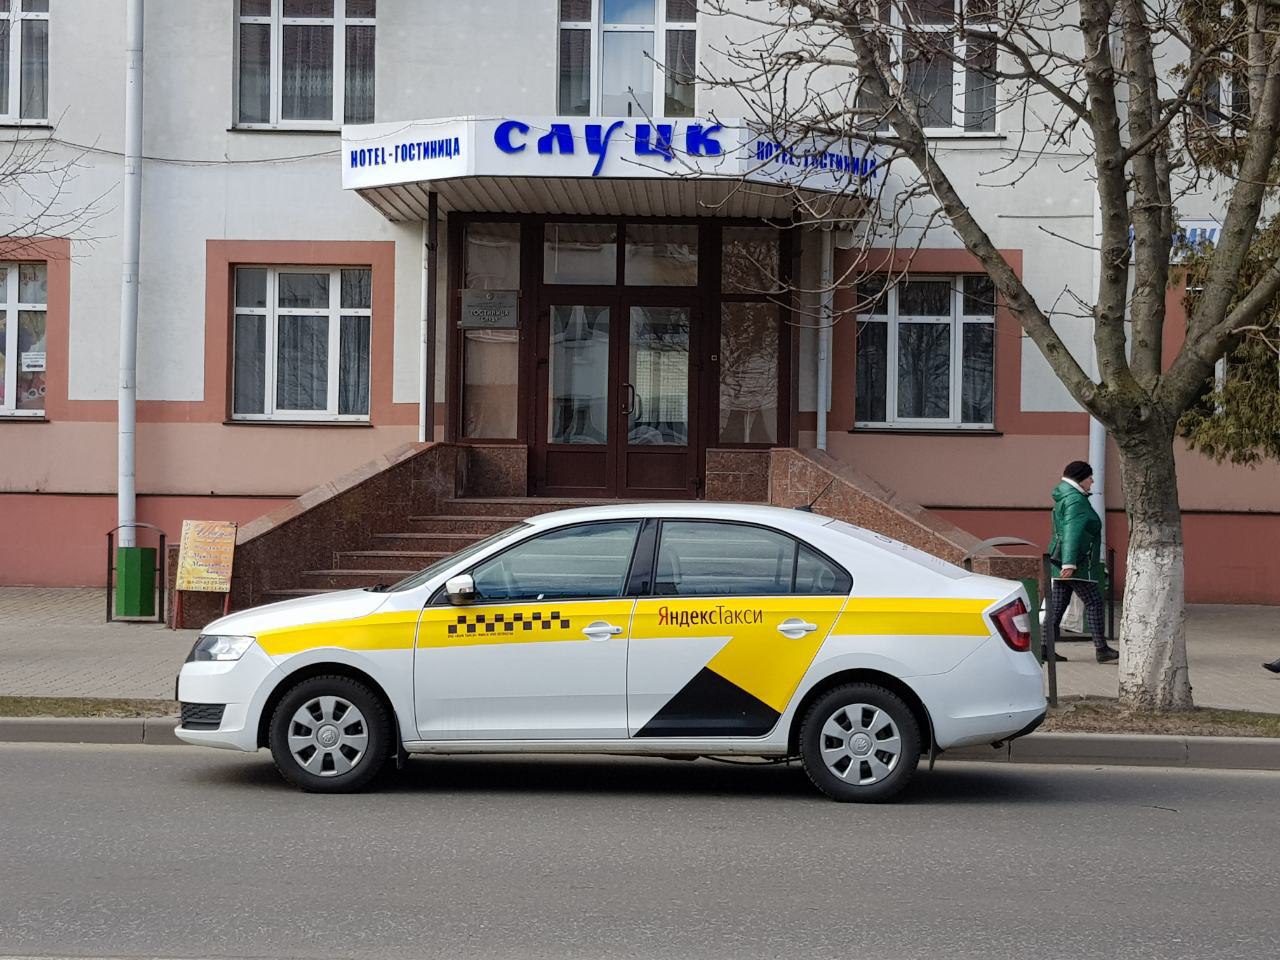 Яндекс.Такси запустилось в Слуцке